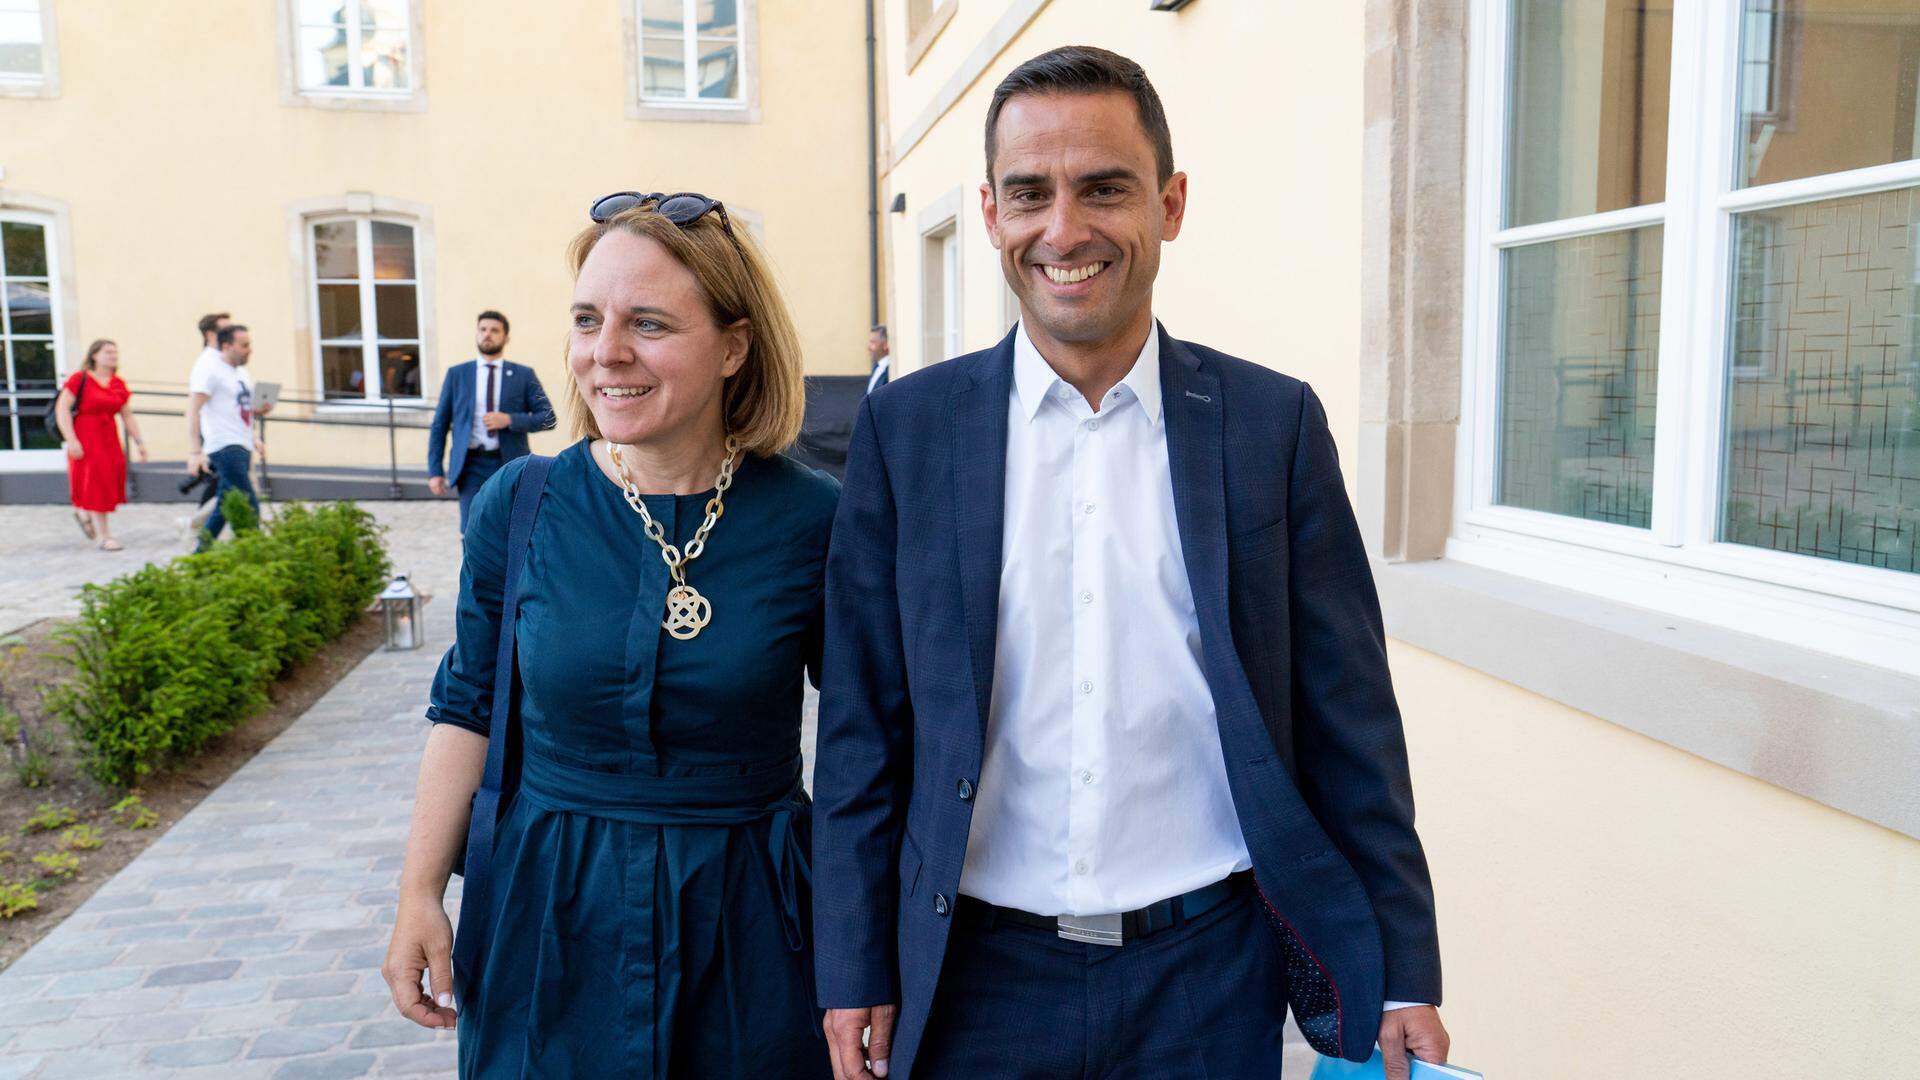 Corinne Cahen übergab im Juni nach den Gemeindewahlen ihr Amt als Familien- und Integrationsministerin an Parteikollege Max Hahn. Cahen ist jetzt Schöffin der Stadt Luxemburg. 